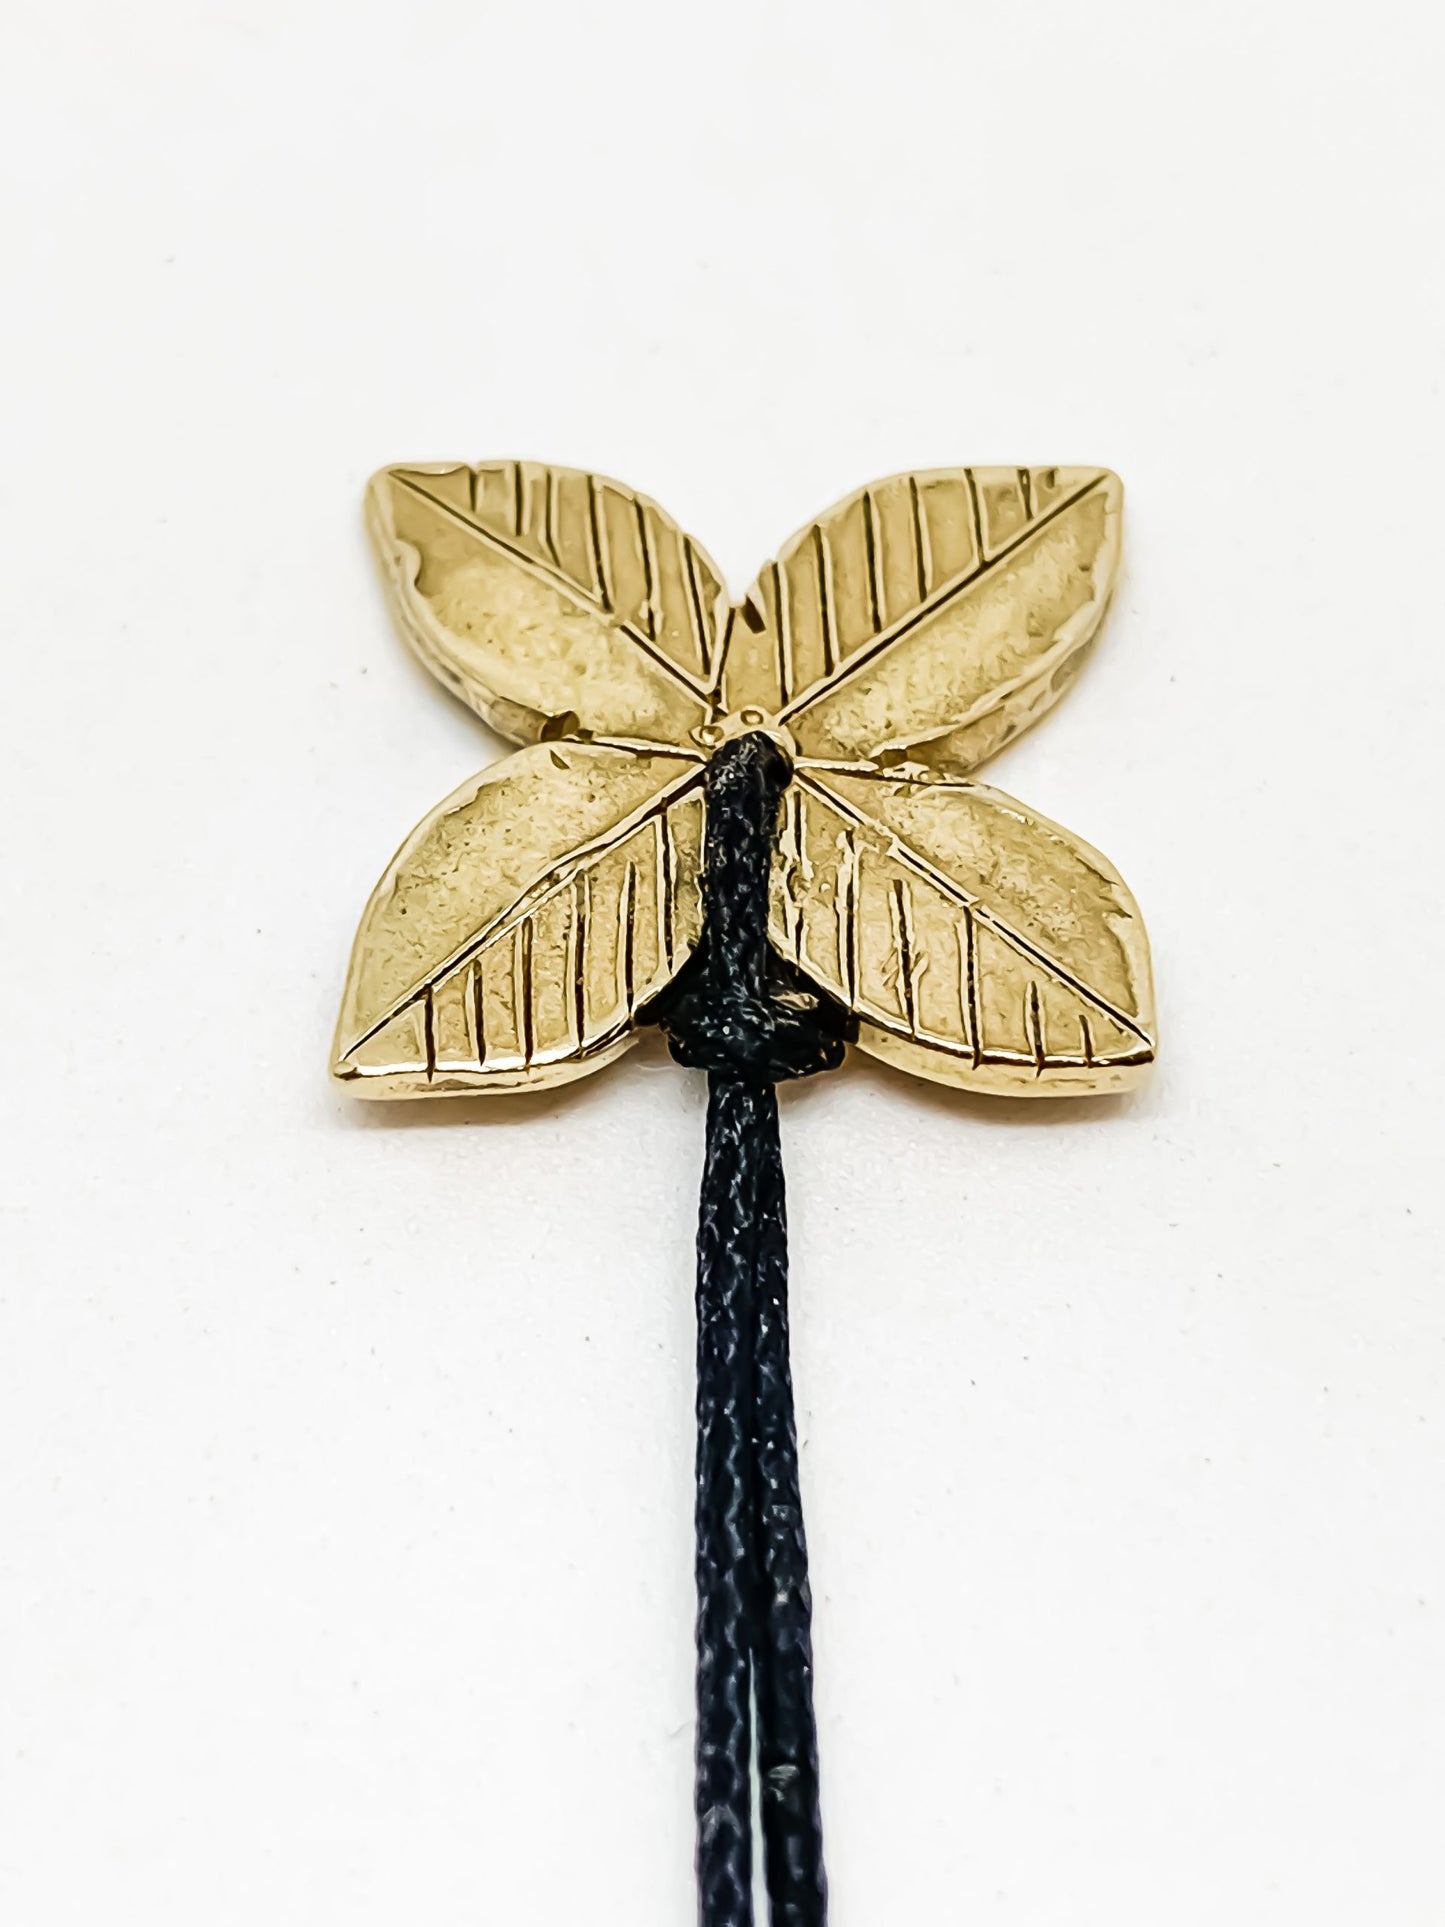 Tumbling Flower Pendant - 9ct Gold